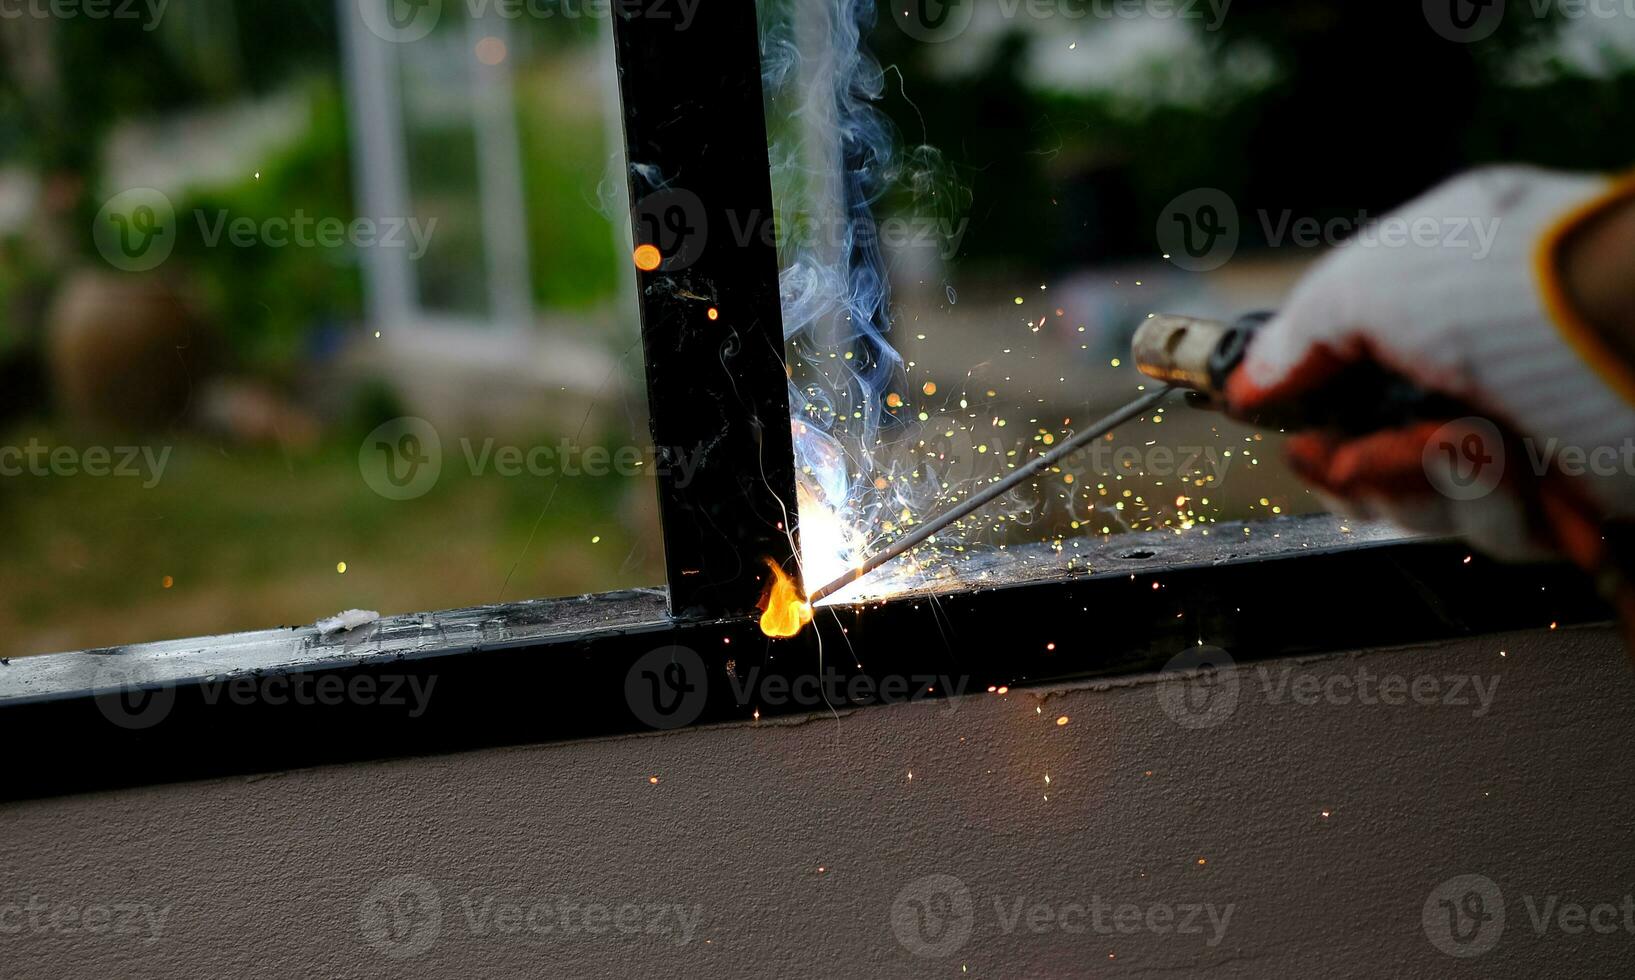 El técnico soldador está soldando acero con chispas. foto